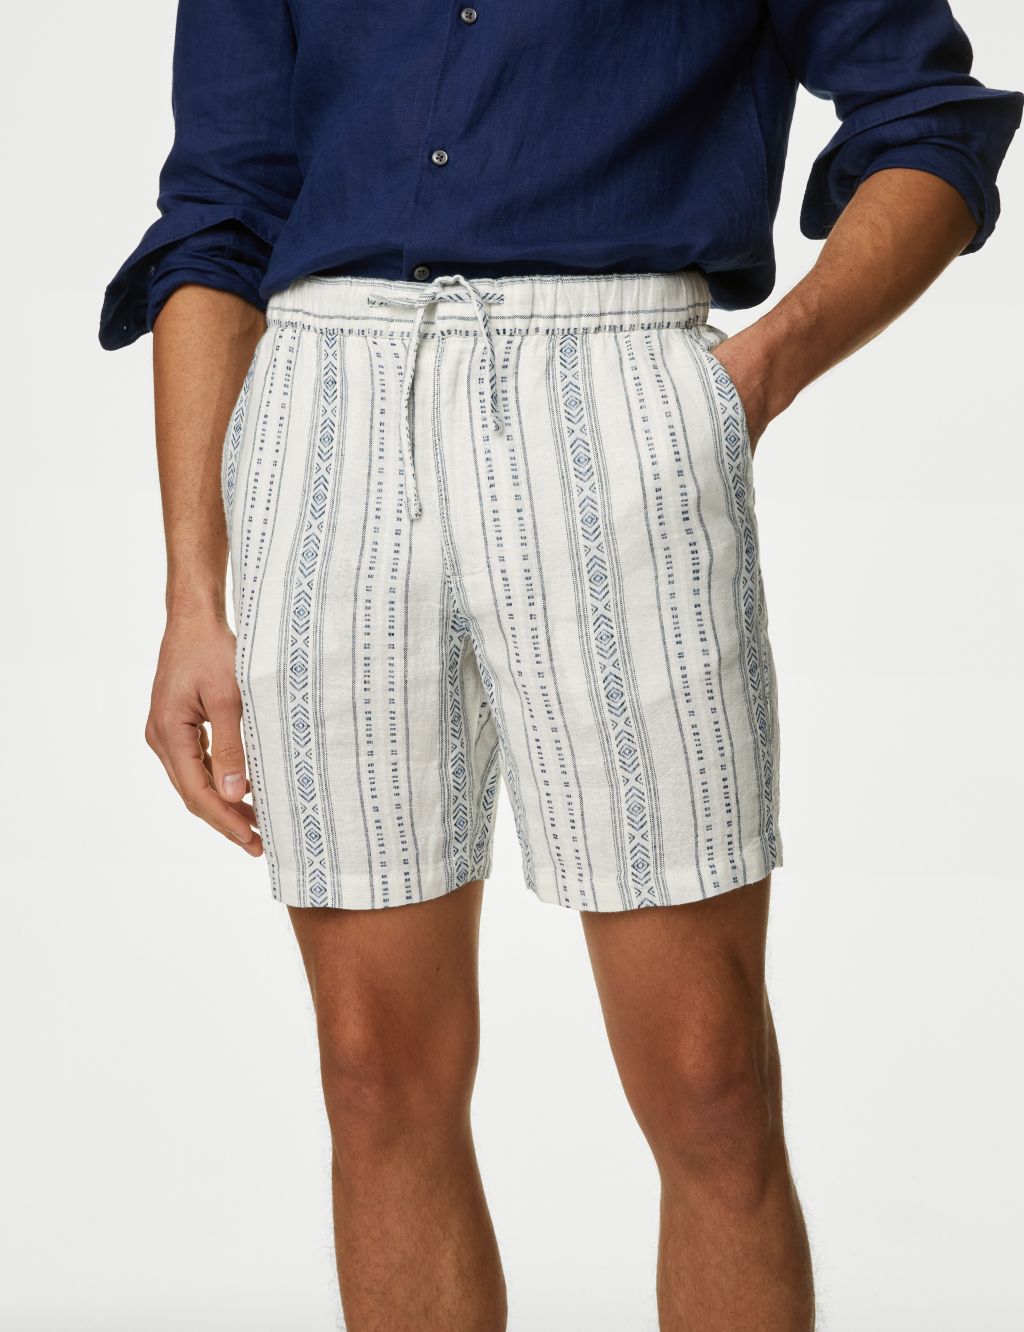 Linen Rich Elasticated Waist Shorts